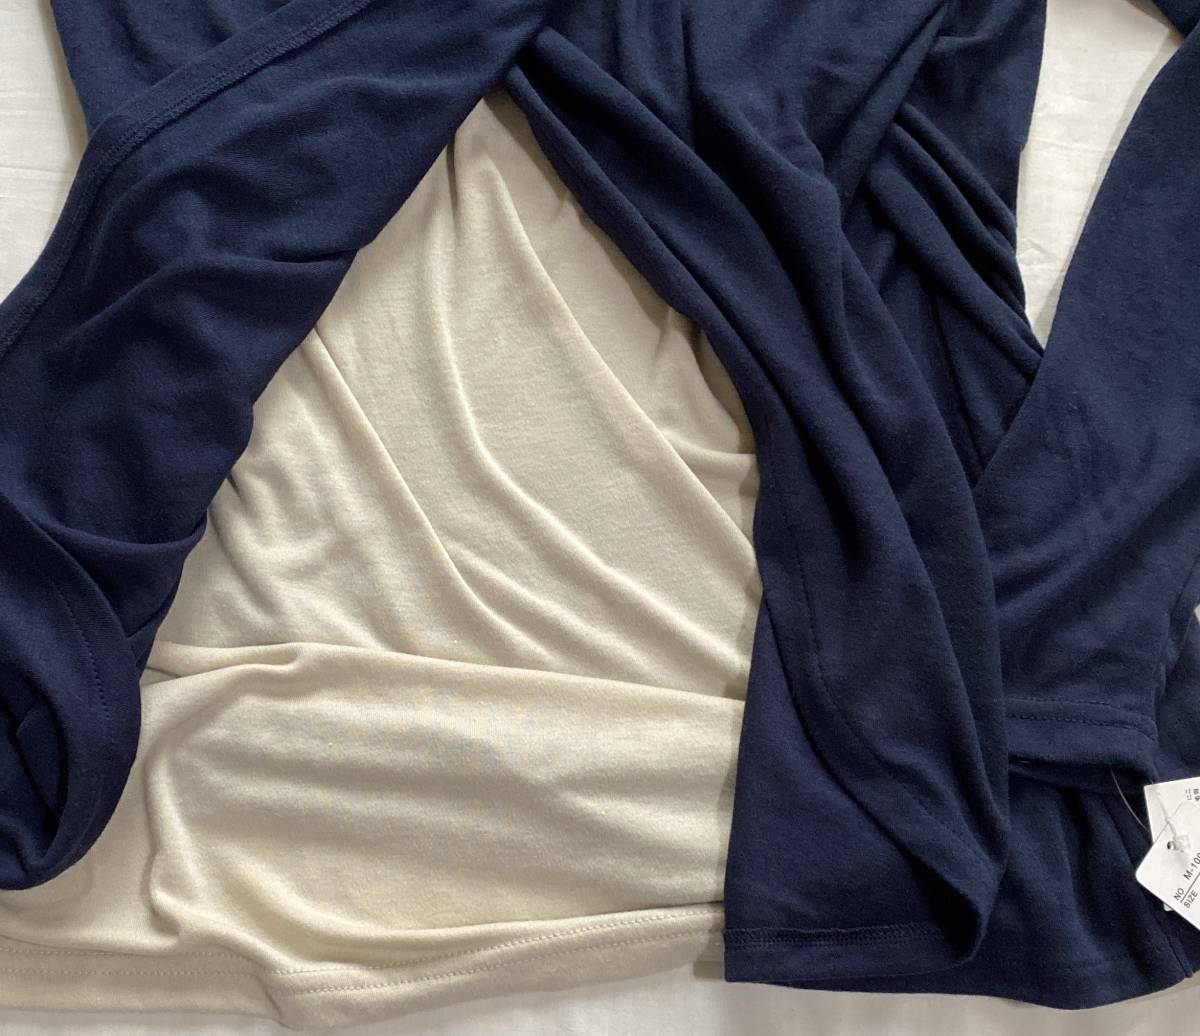  материнство - рубашка с длинным рукавом L размер glamarous jly производство передний послеродовой соответствует кормление . имеется темно-синий серия передний видеть примерно 2 -слойный 4.290 иен товар (((( не использовался товар 